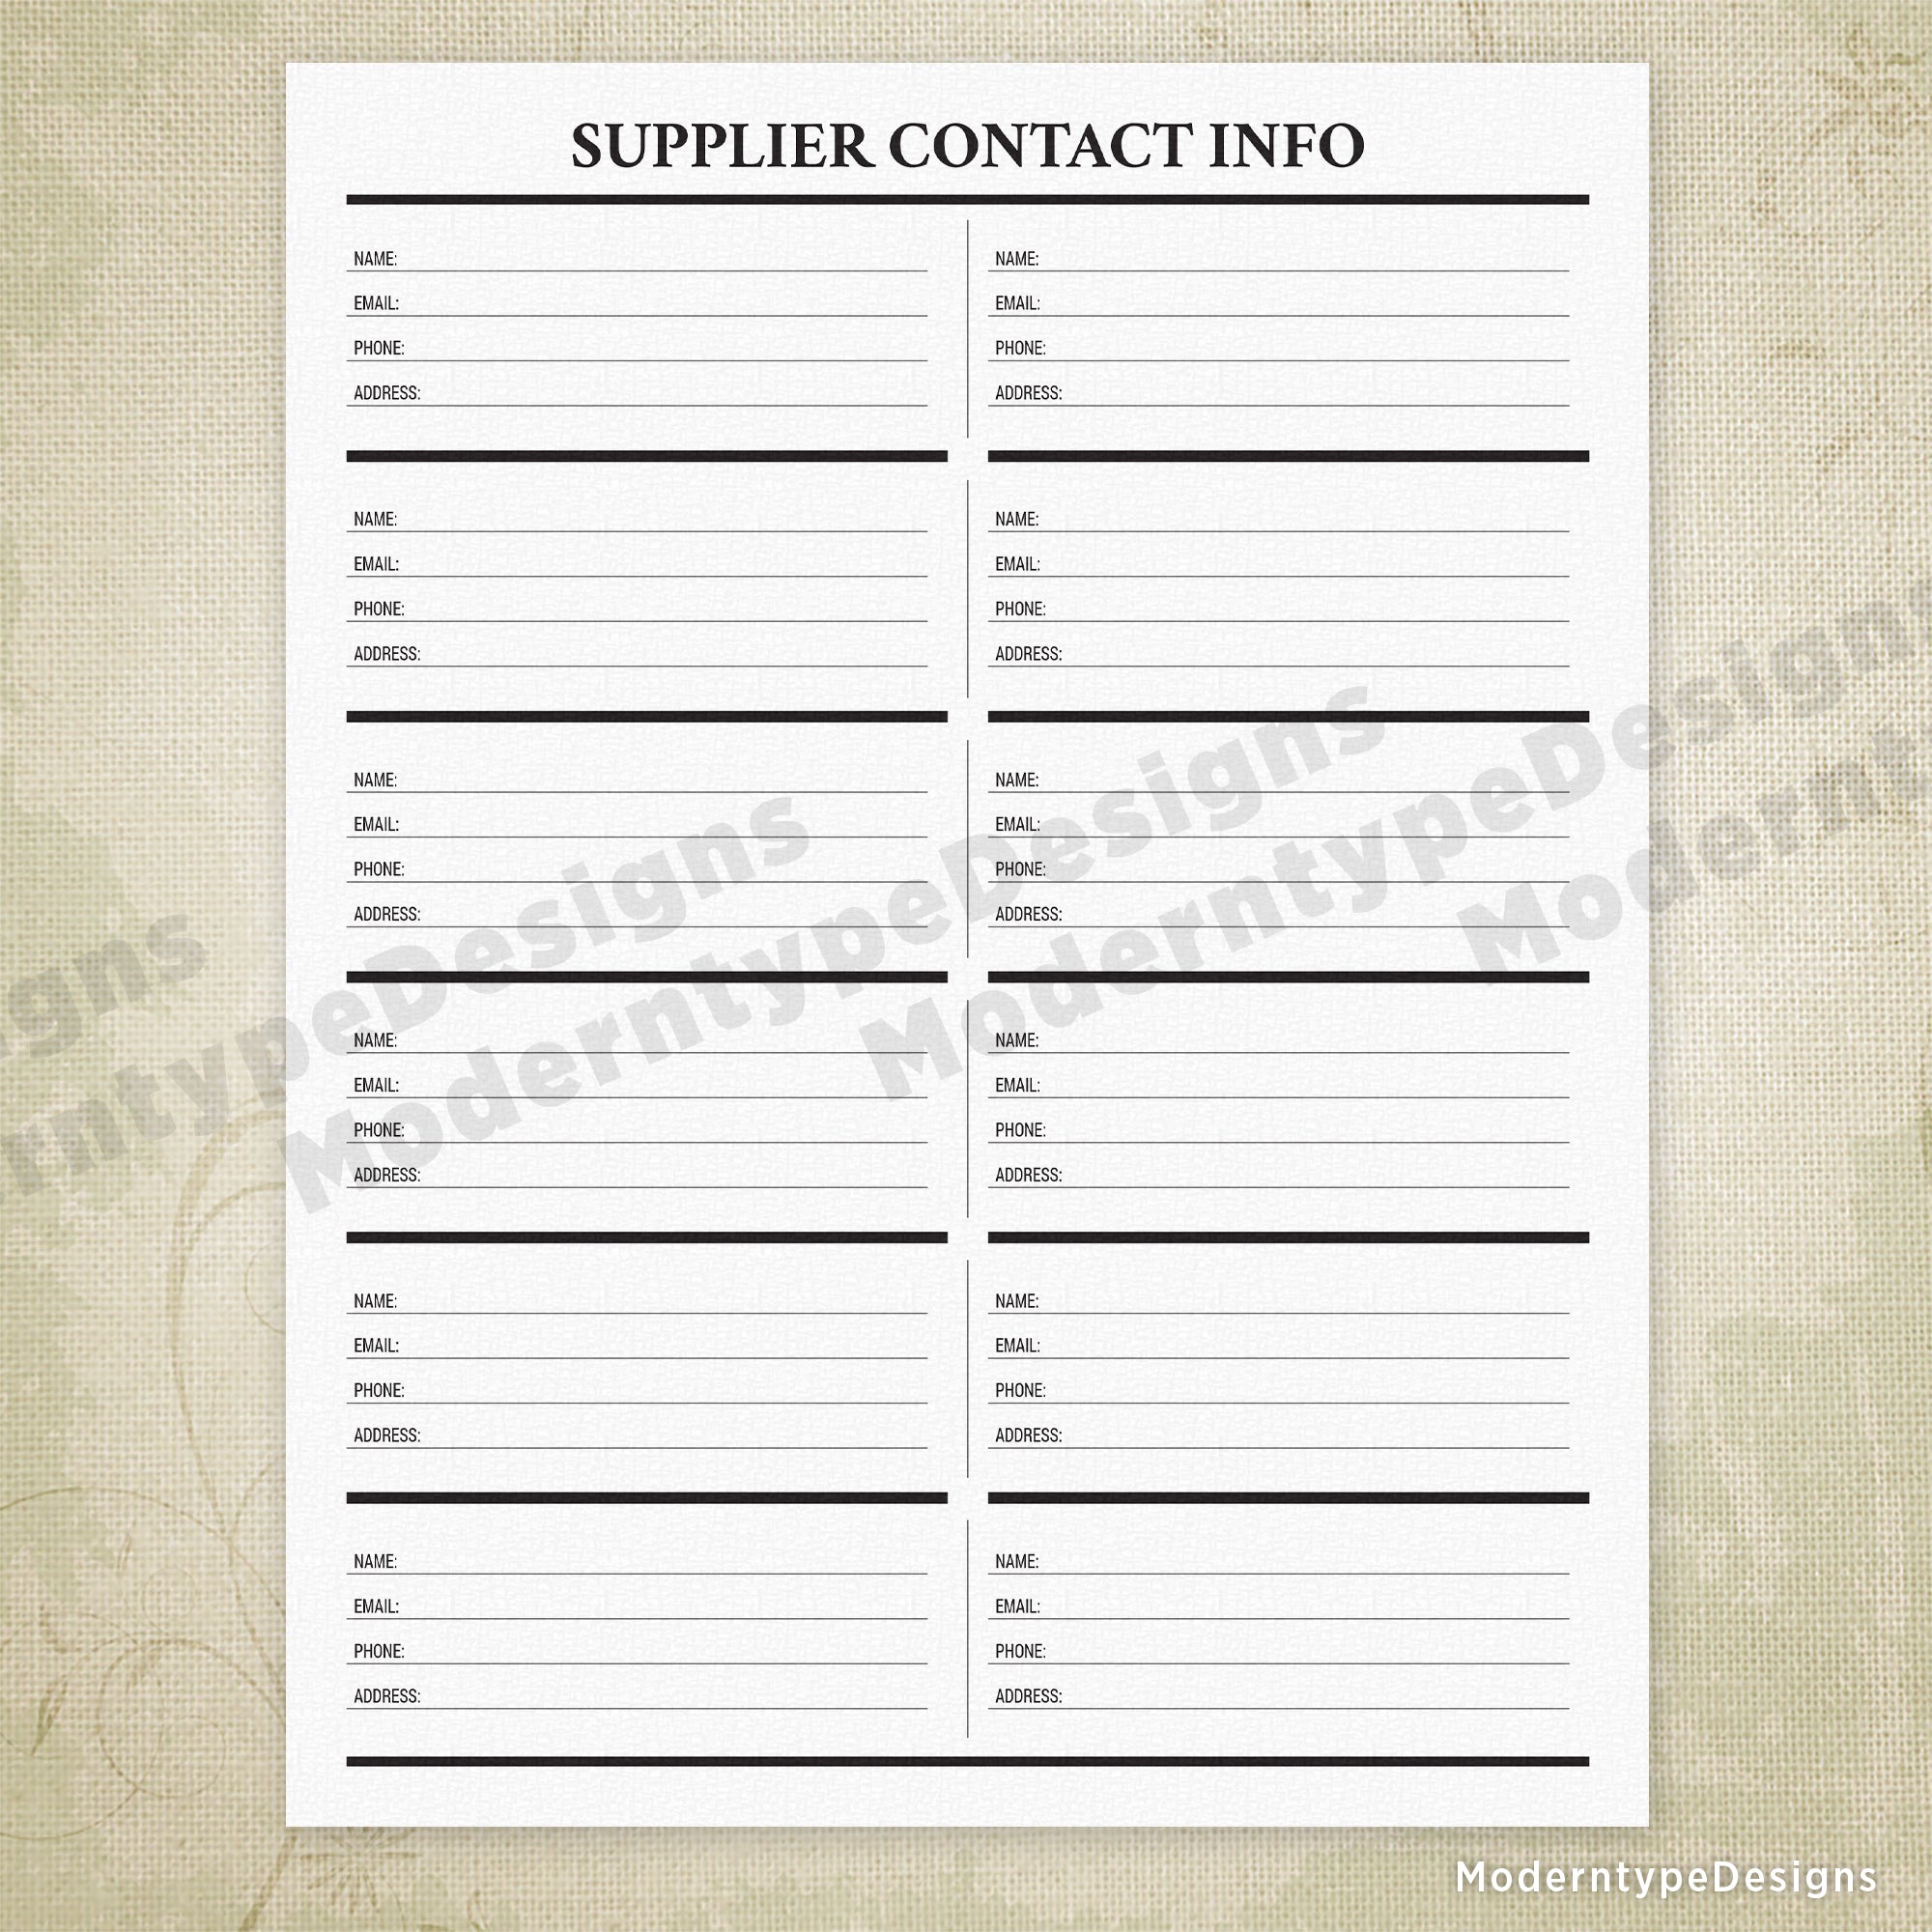 Supplier Contact Info Printable